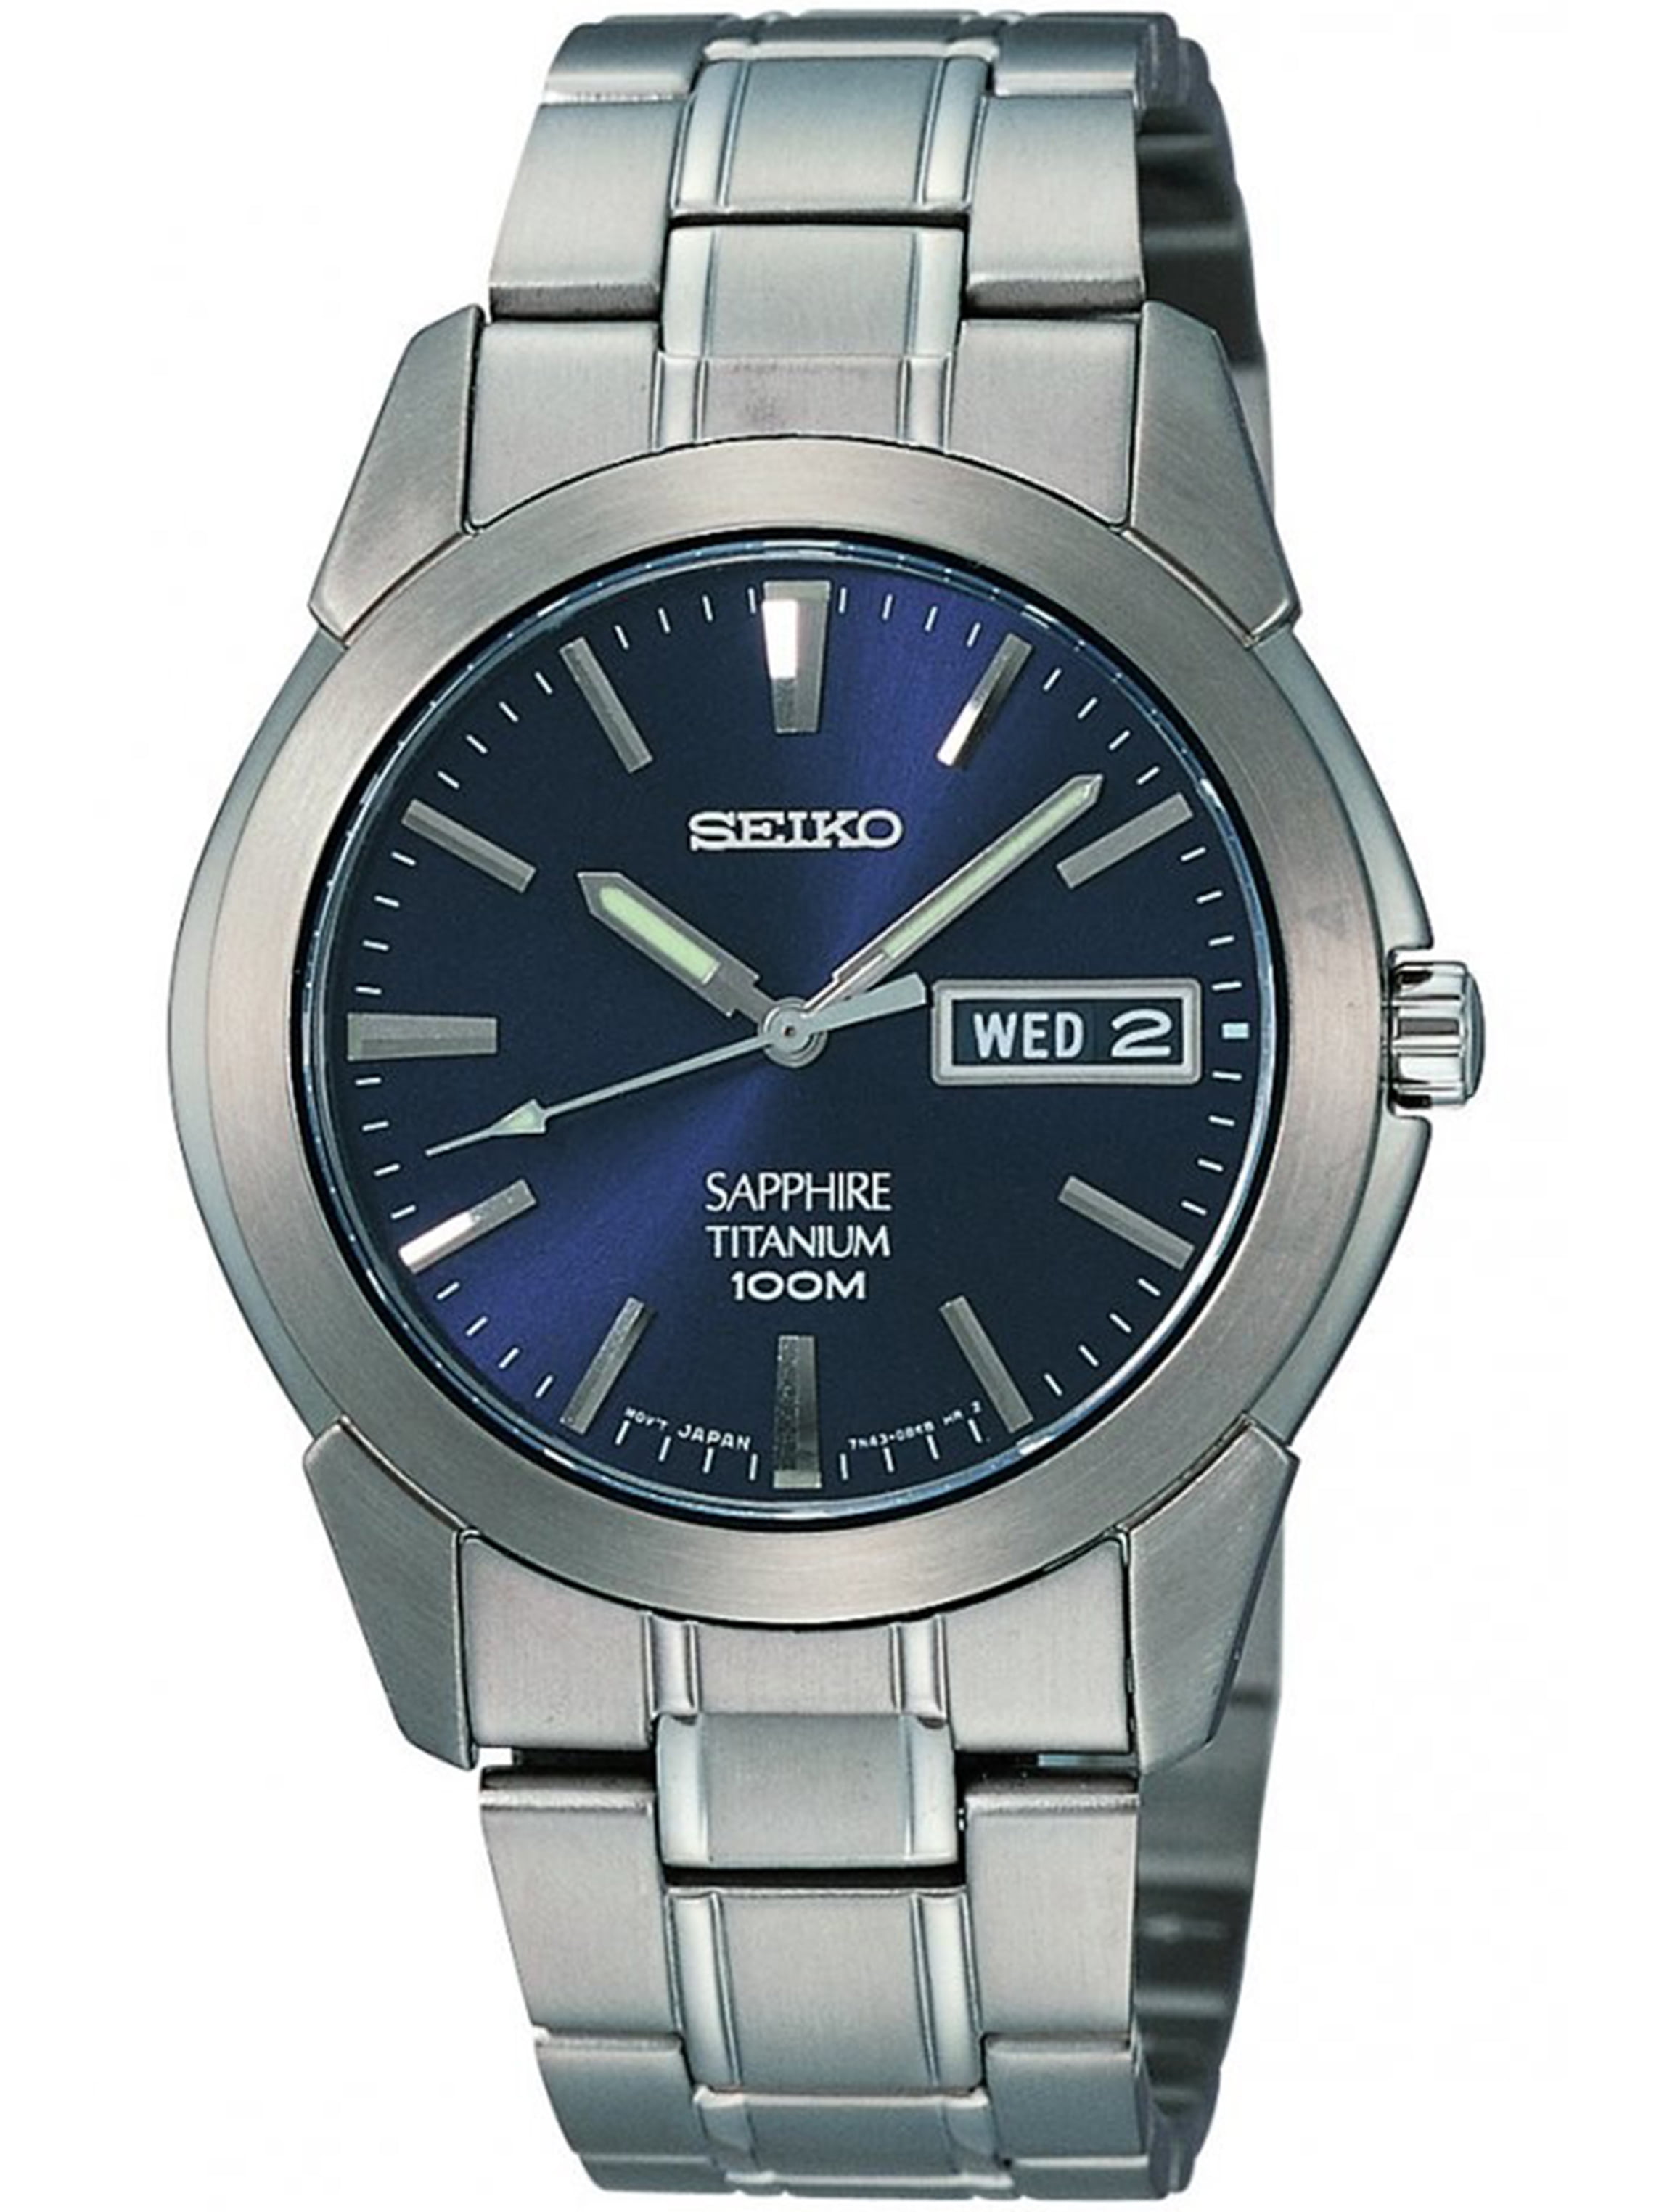 Seiko Men's Quartz Titanium Case and Bracelet Watch SGG729 - Walmart.com